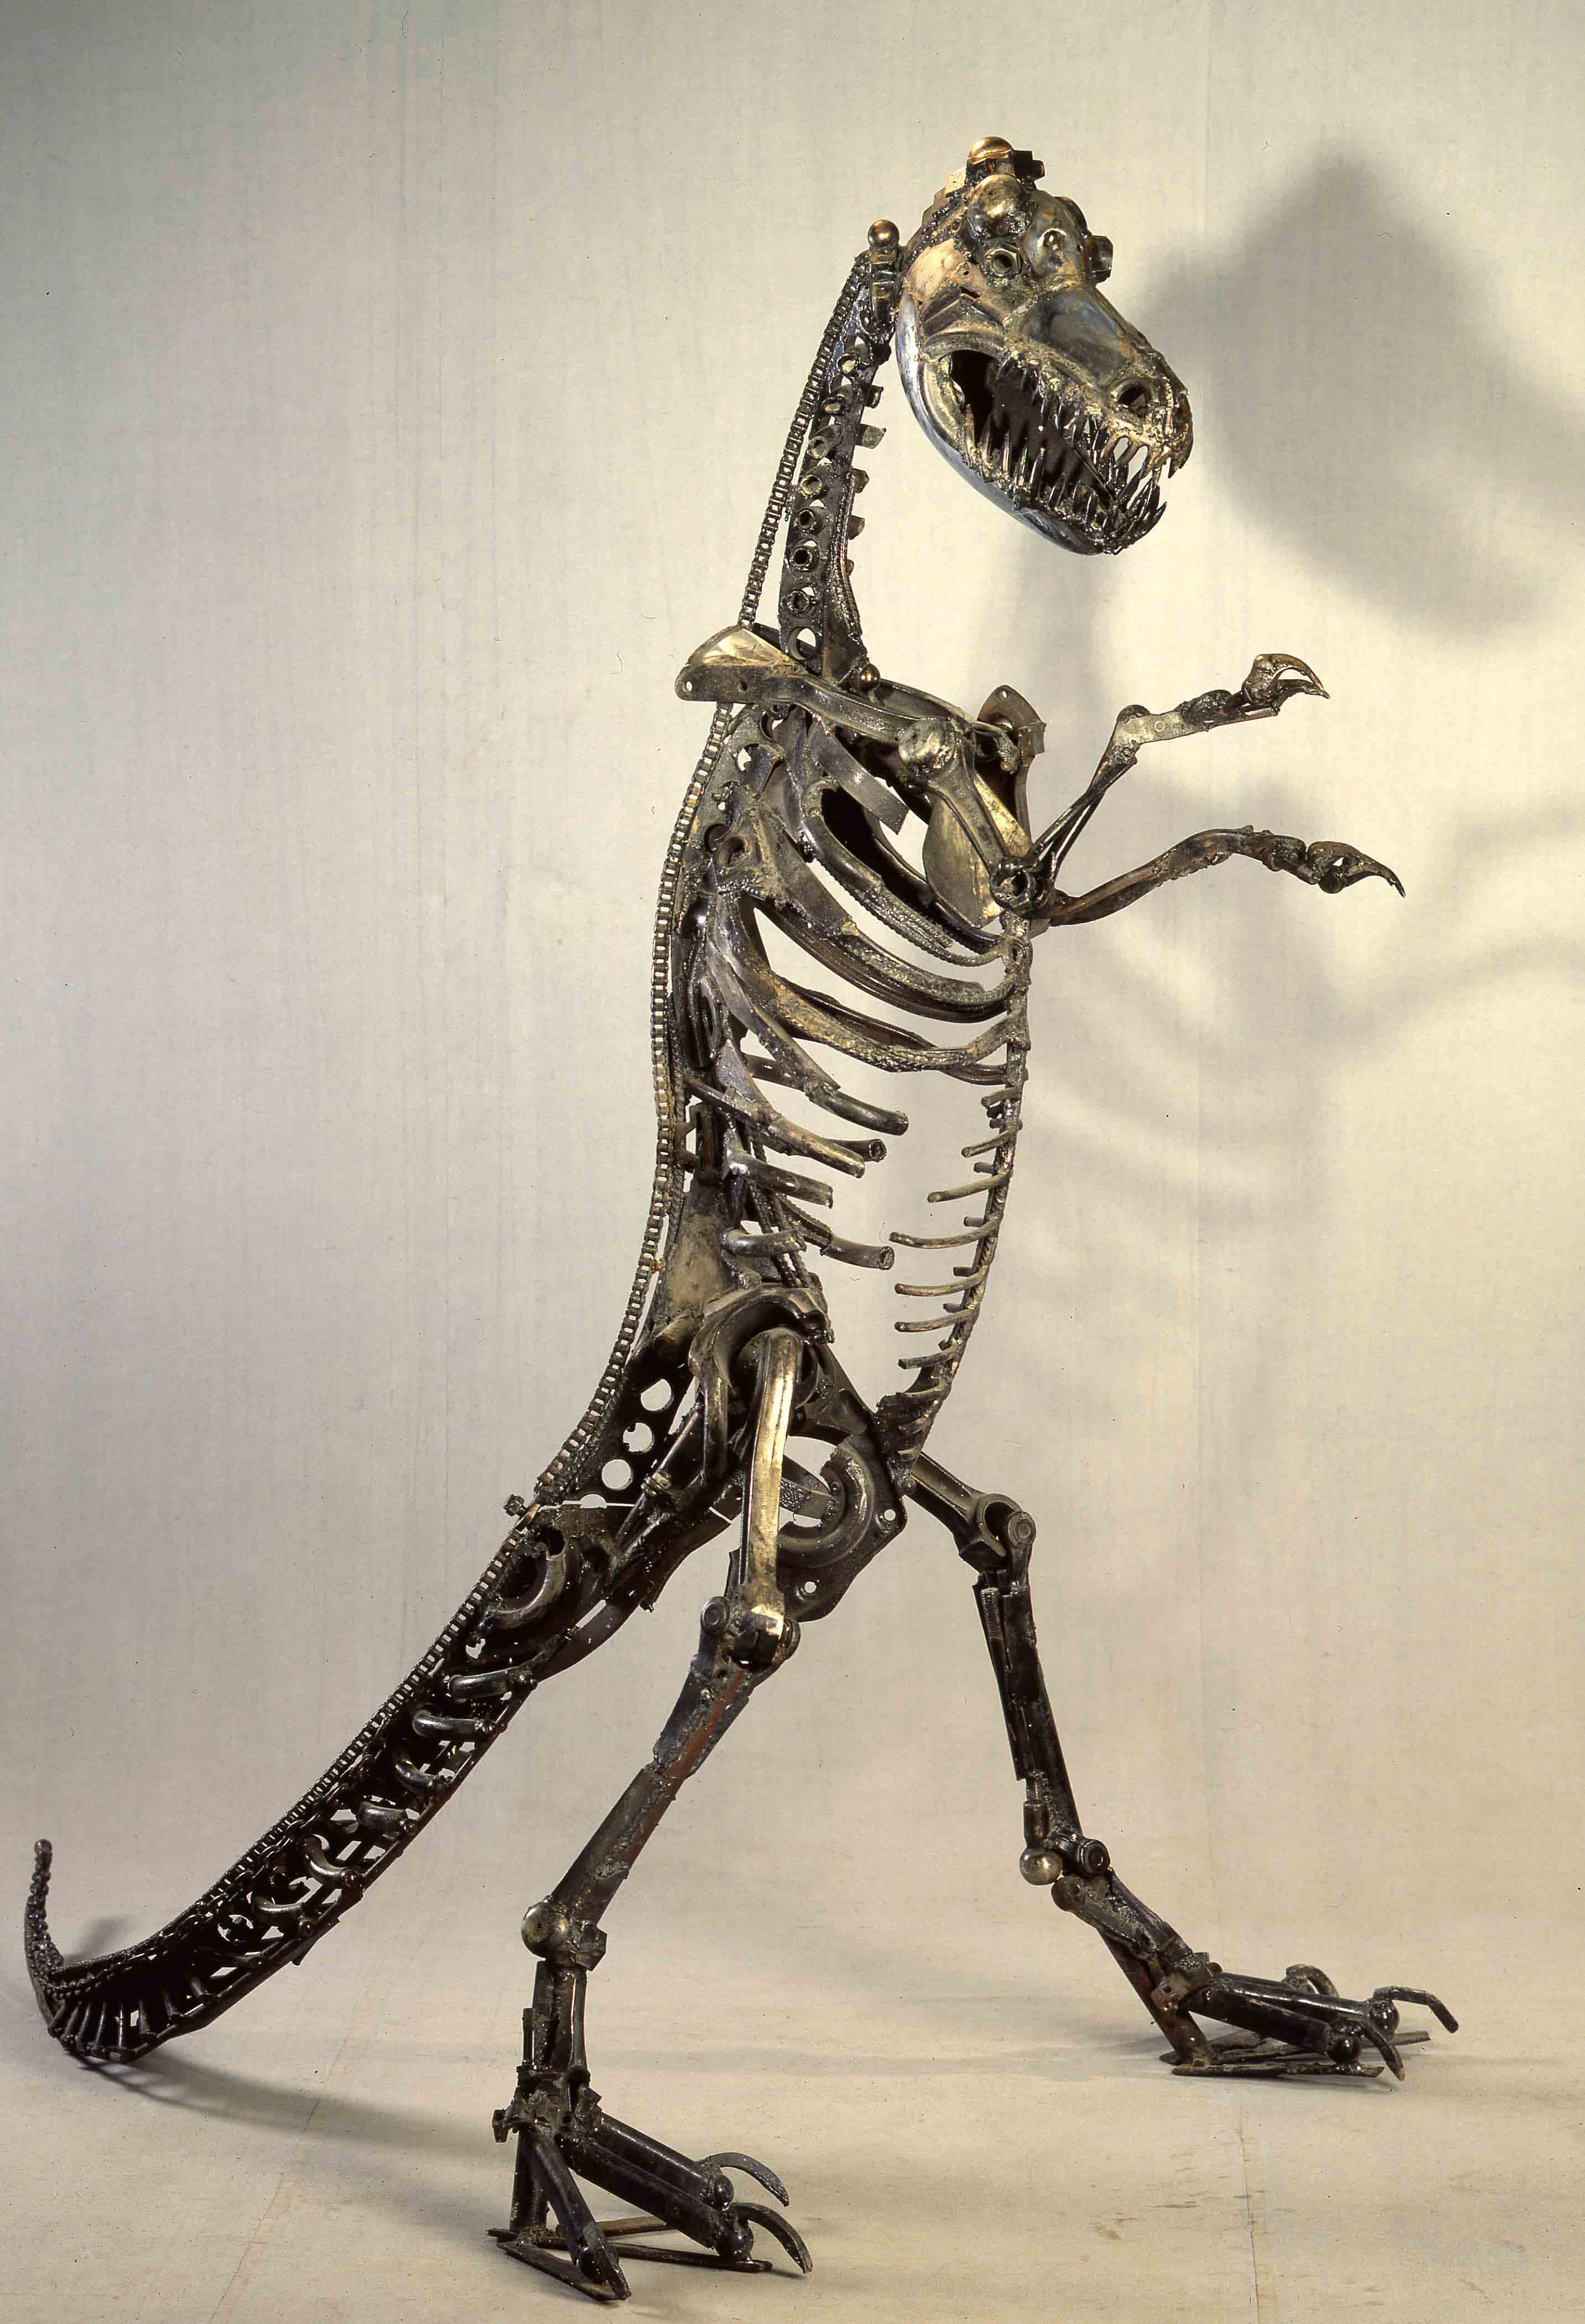 Андрей Асерьянц. "Динозавр", 1989. Металл, высота 200 см. Фото из архива Андрея Асерьянца